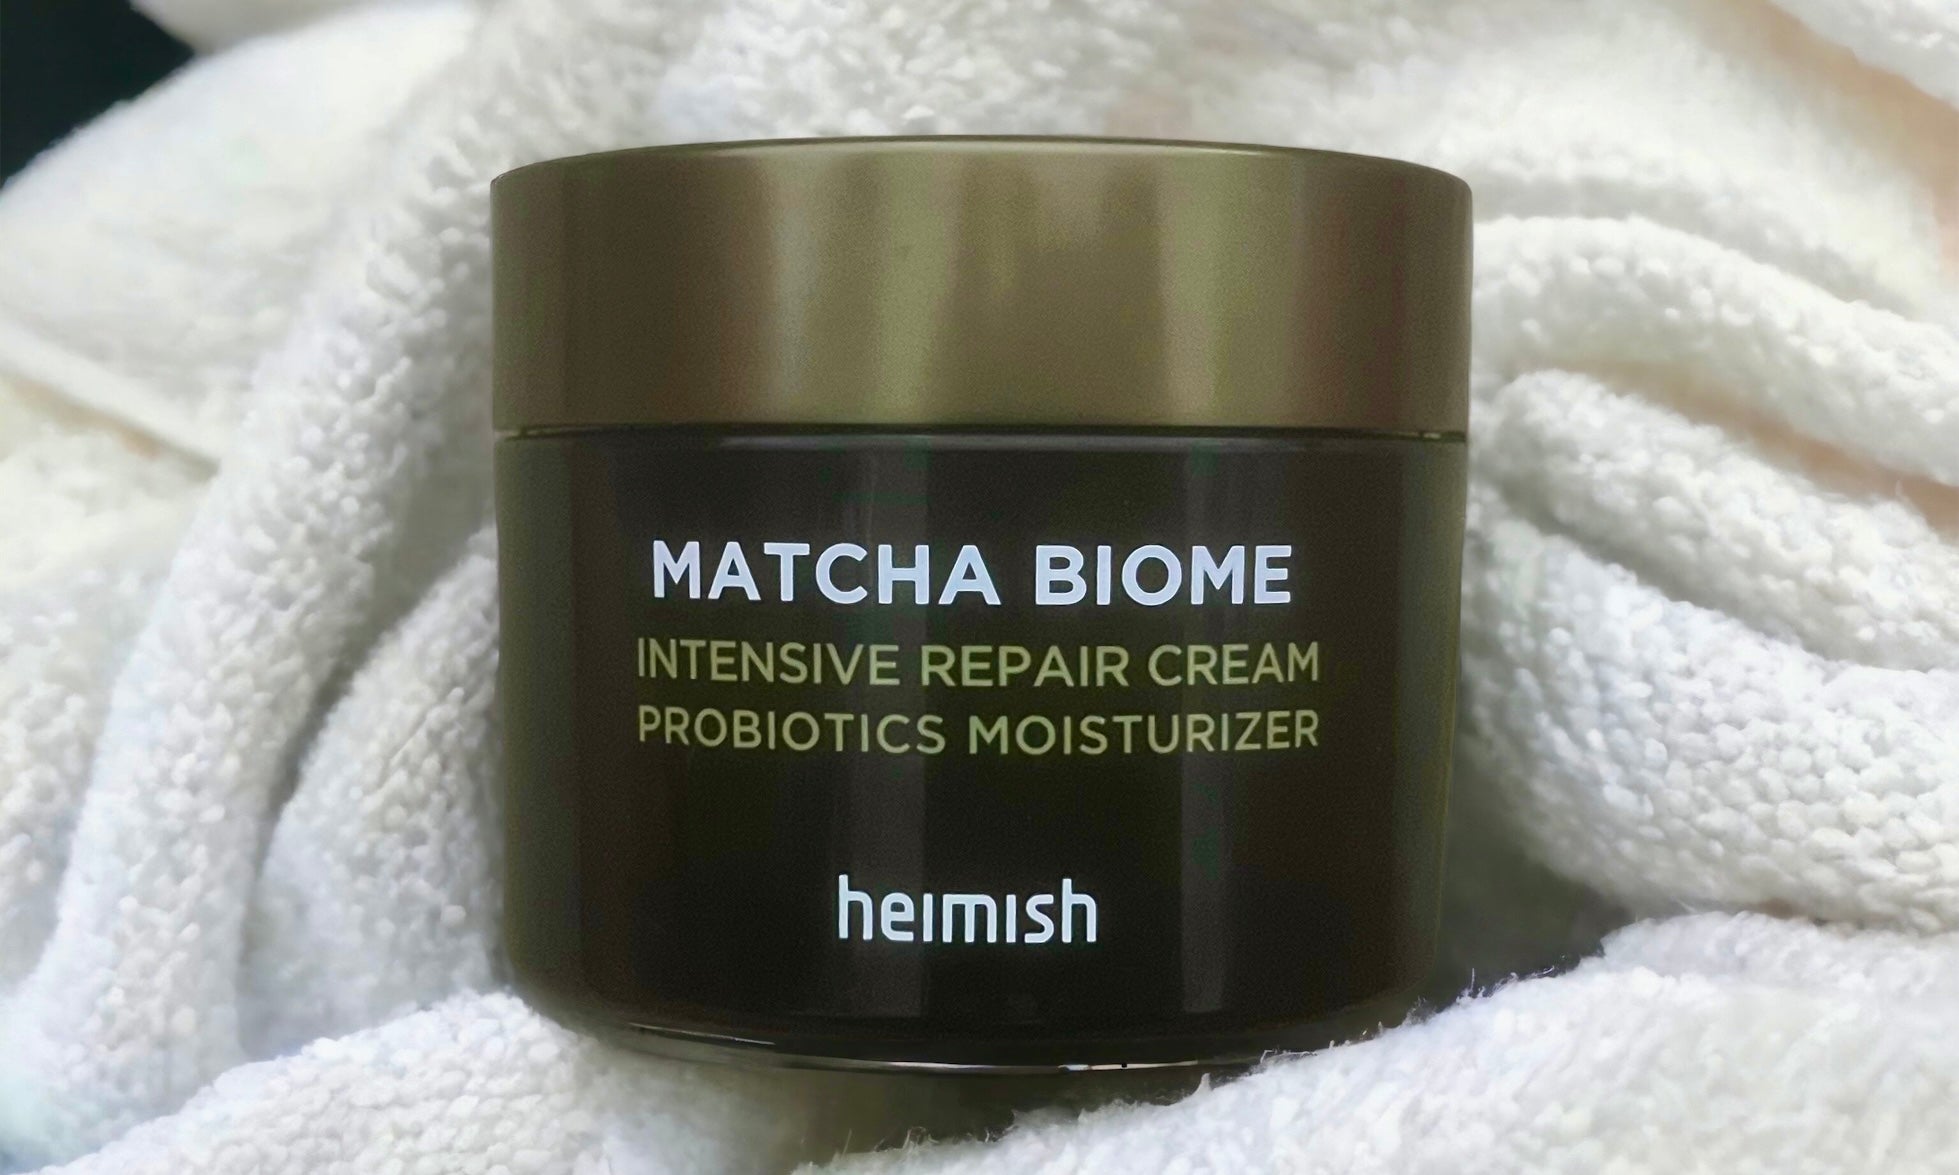 HI-REVIEW: Heimish Matcha Biome Intensive Repair Cream